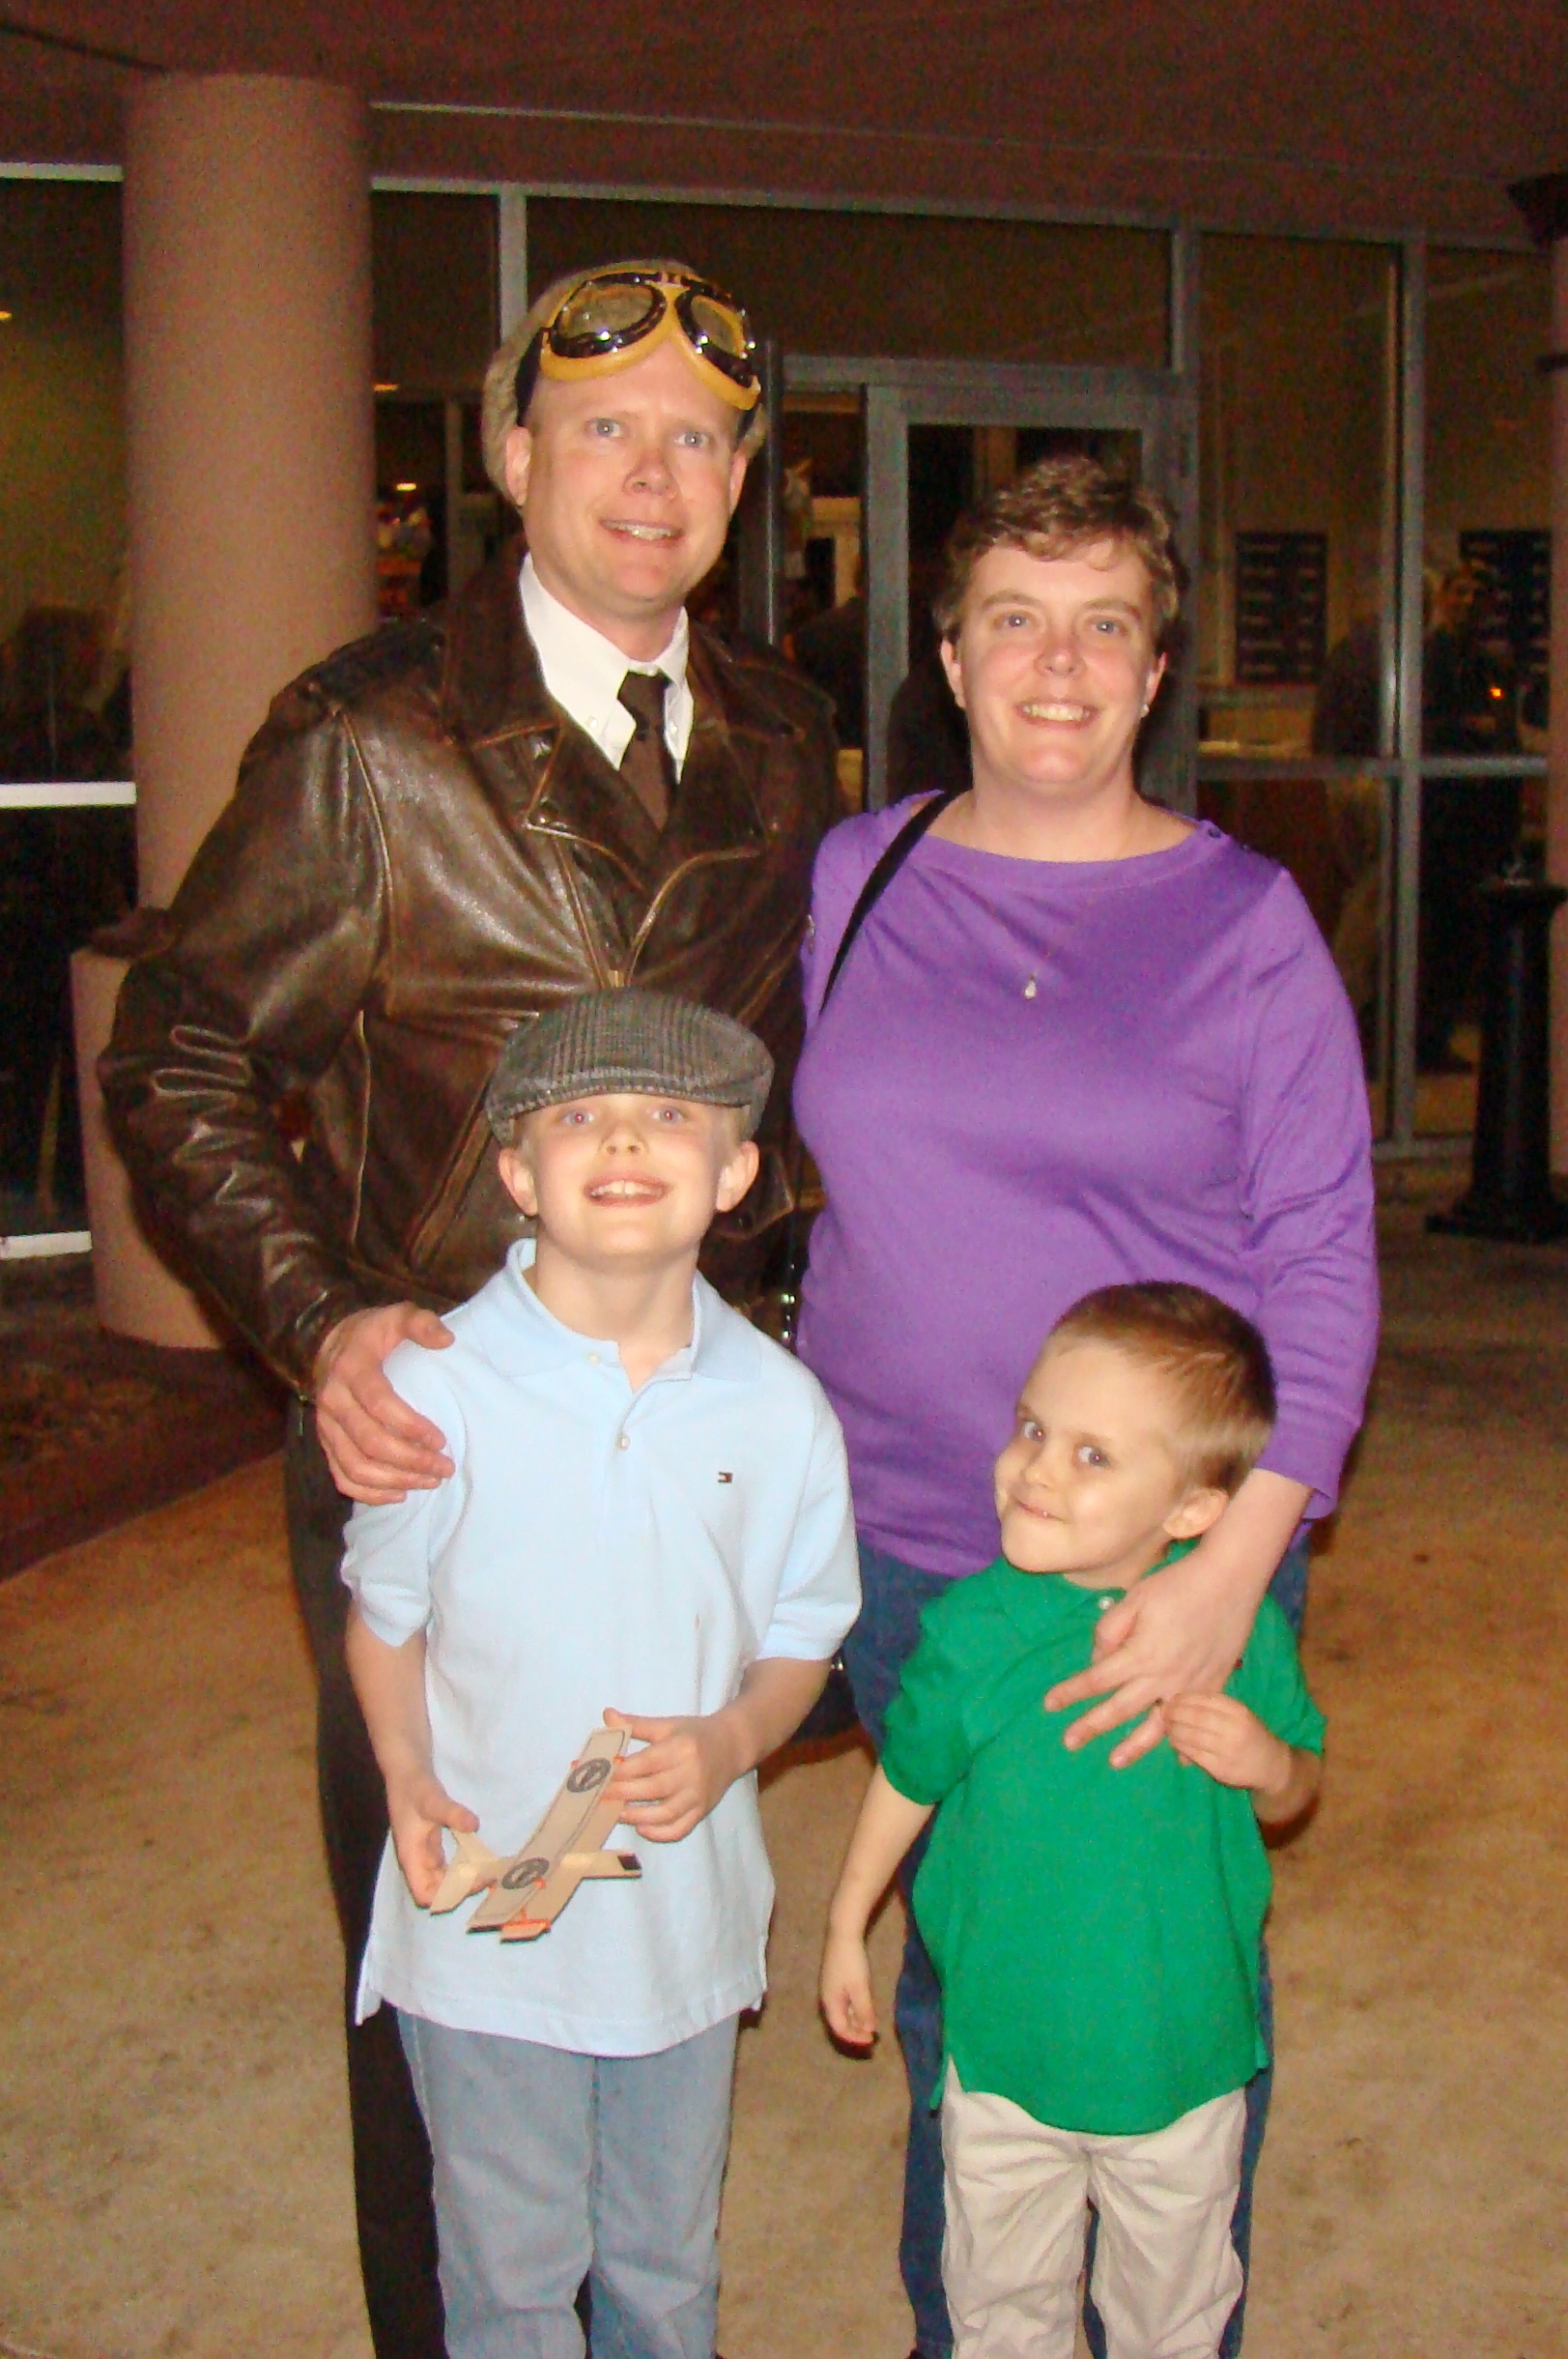 Chris & Andie Minner with Michael & Ernie - 2, 31 Dec '13.JPG